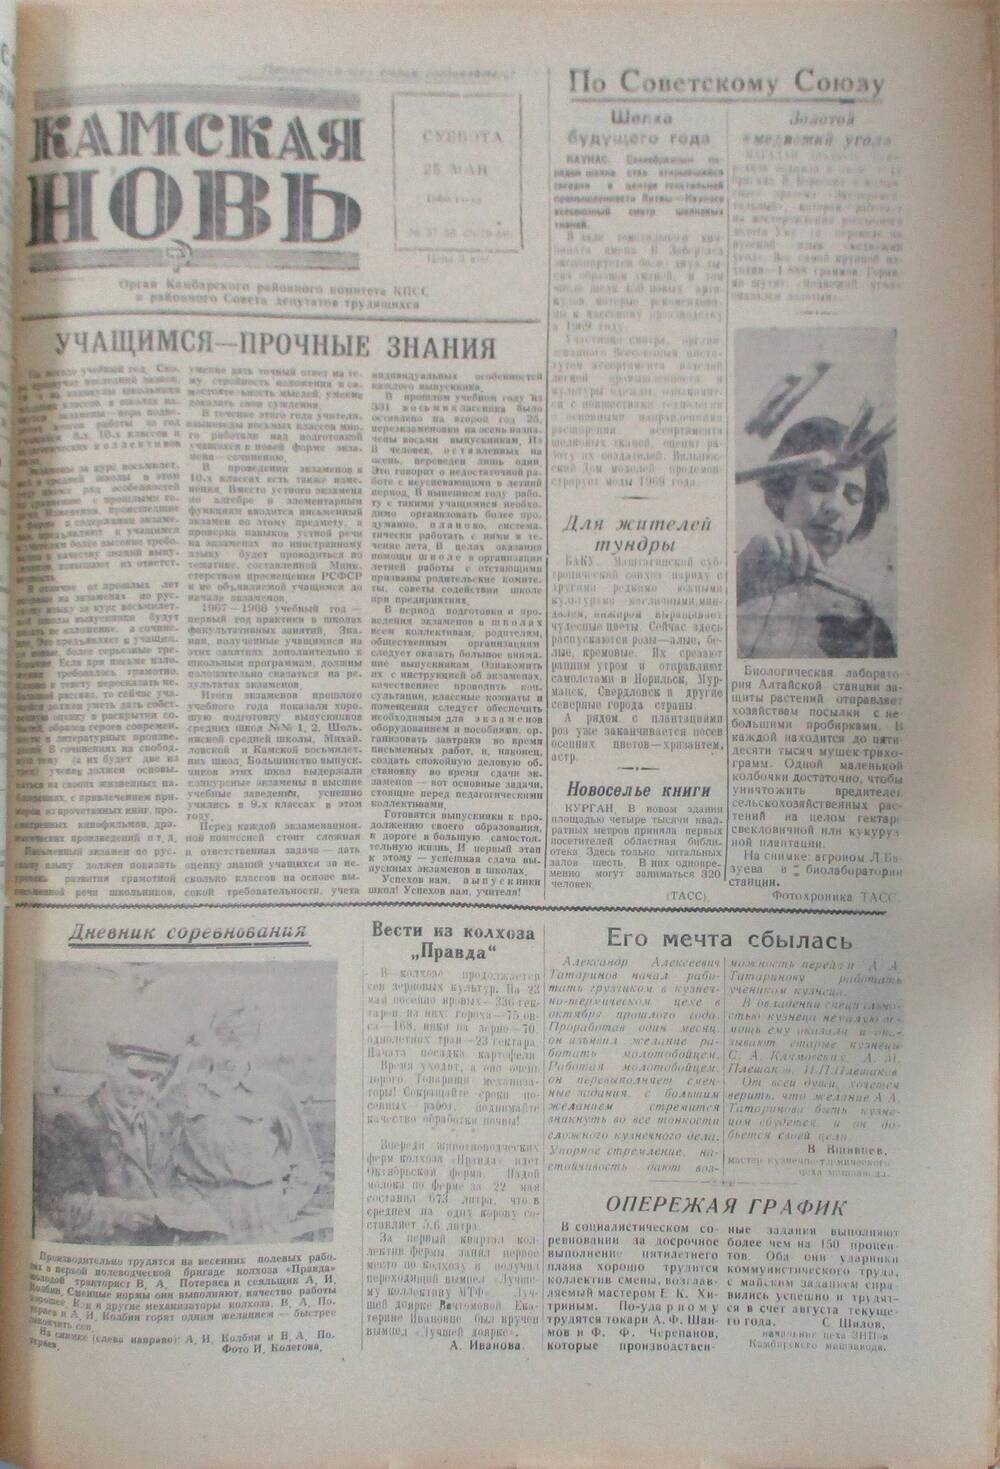 Газета Камская новь за 1968 год, орган Камбарского Райсовета и РККПСС, подшивка с №1 по №150, №57-58.